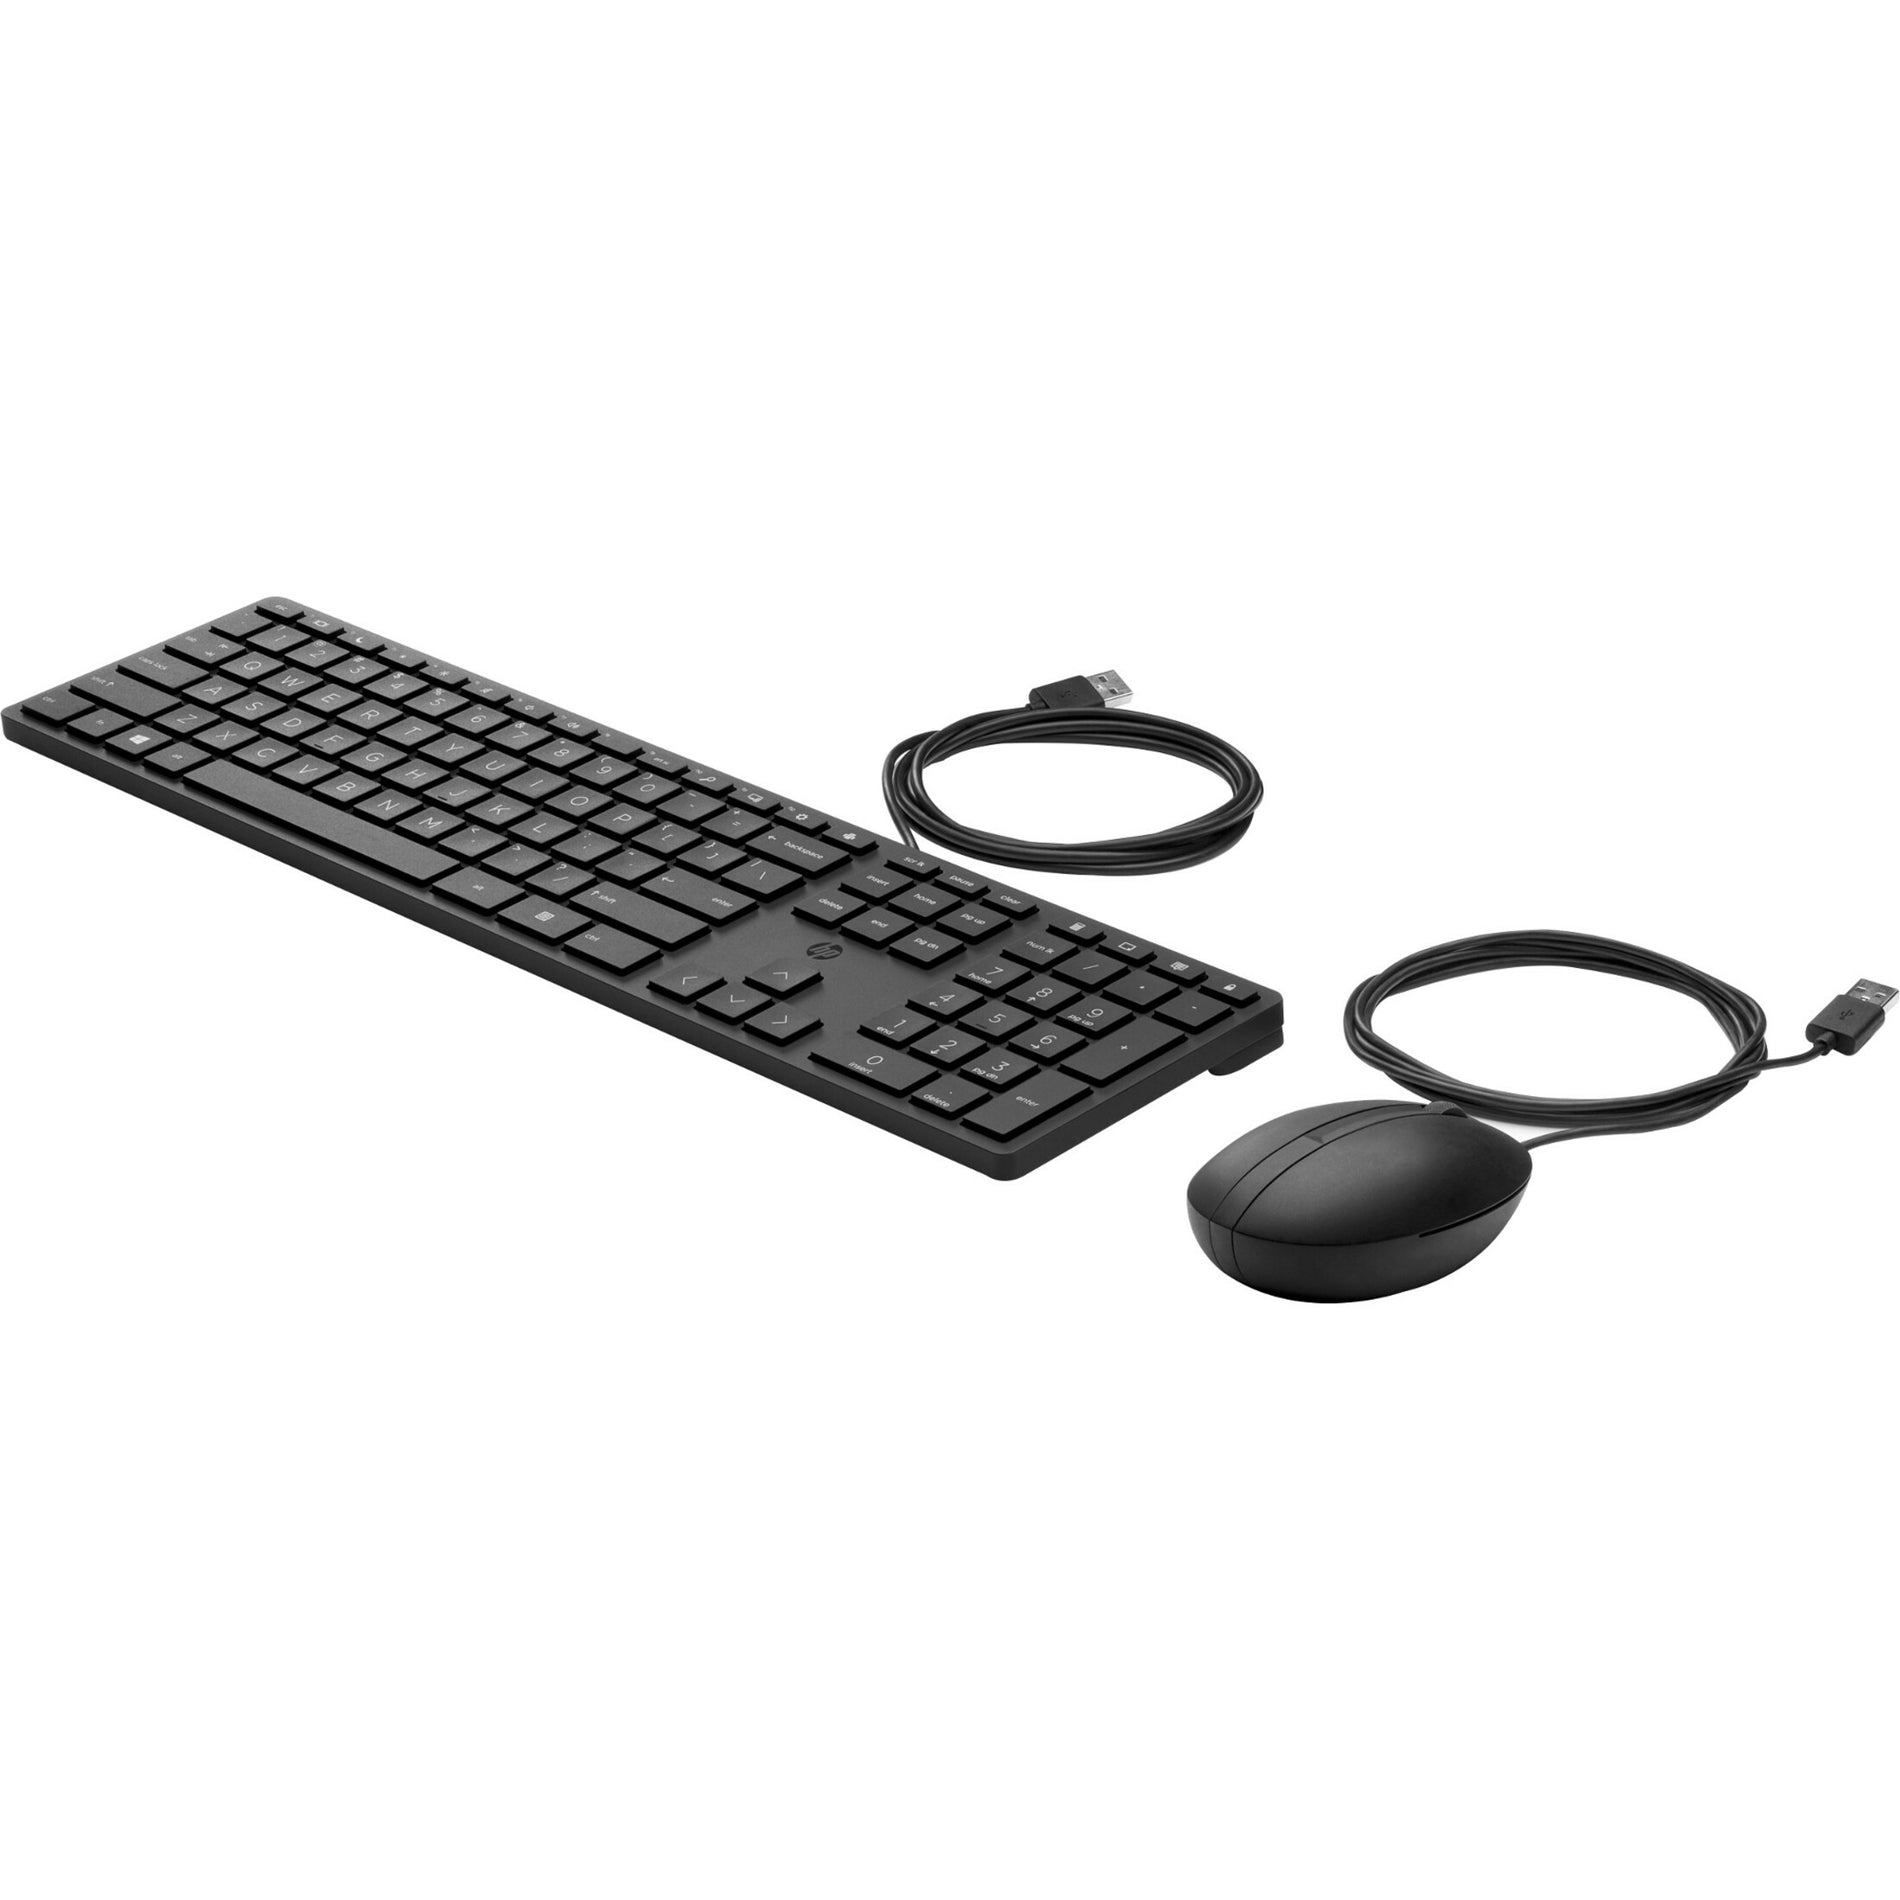 اسم العلامة التجارية: إتش بي ماوس ولوحة مفاتيح سطح المكتب السلكي 320MK HP ، توصيل USB ، متوافق مع ويندوز 11 وويندوز 10 x64